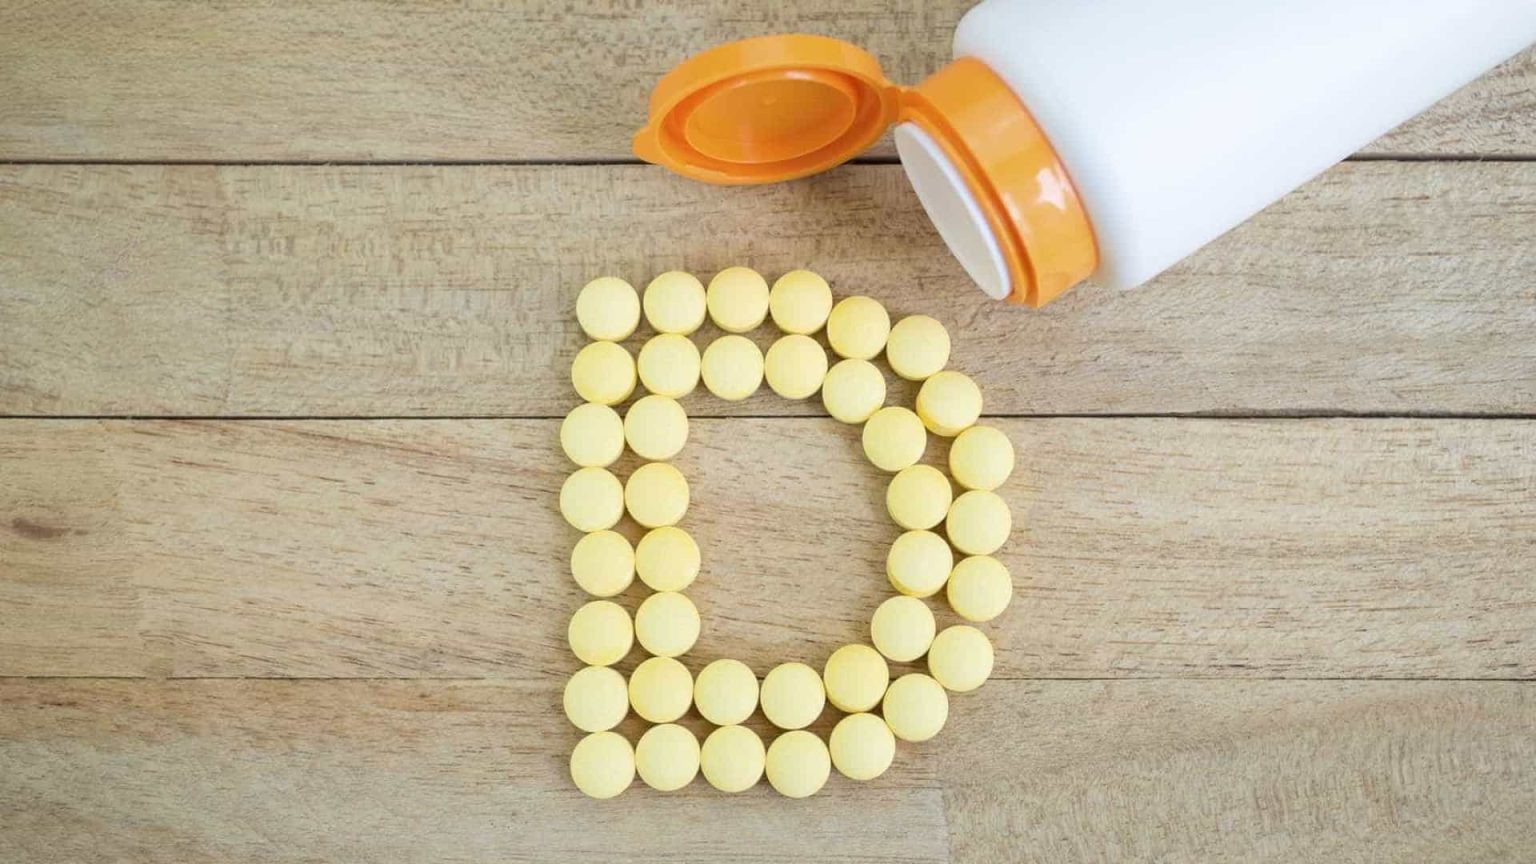 Risco de morte por Covid-19 aumenta com falta de vitamina D, diz estudo